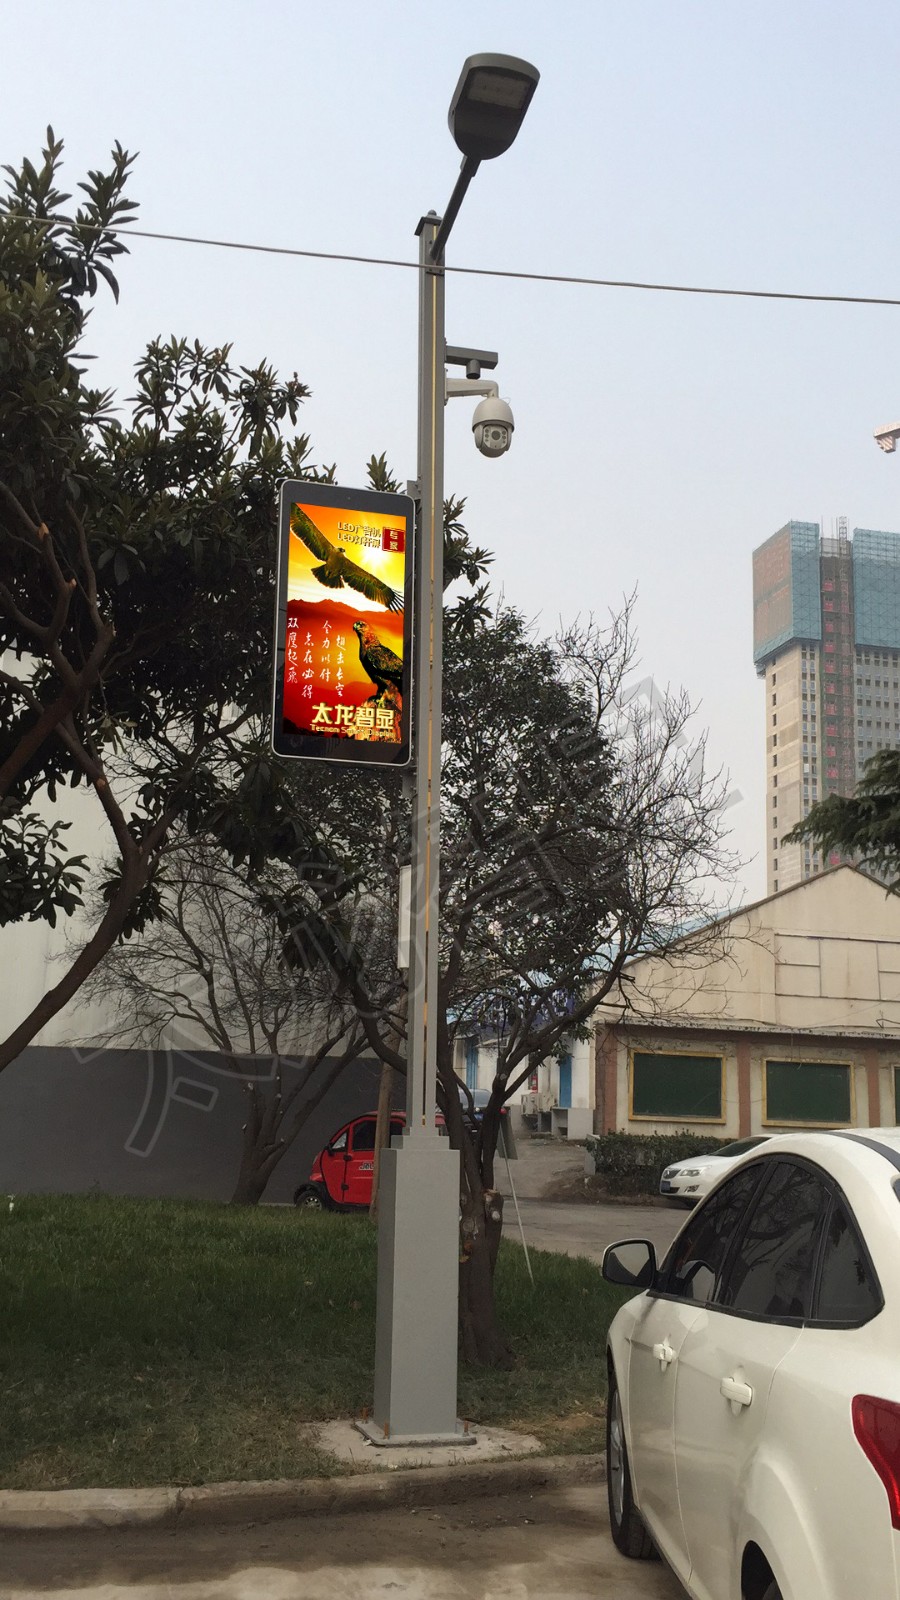 太龙智显郑州欧丽工业园LED灯杆屏案例 (2).jpg